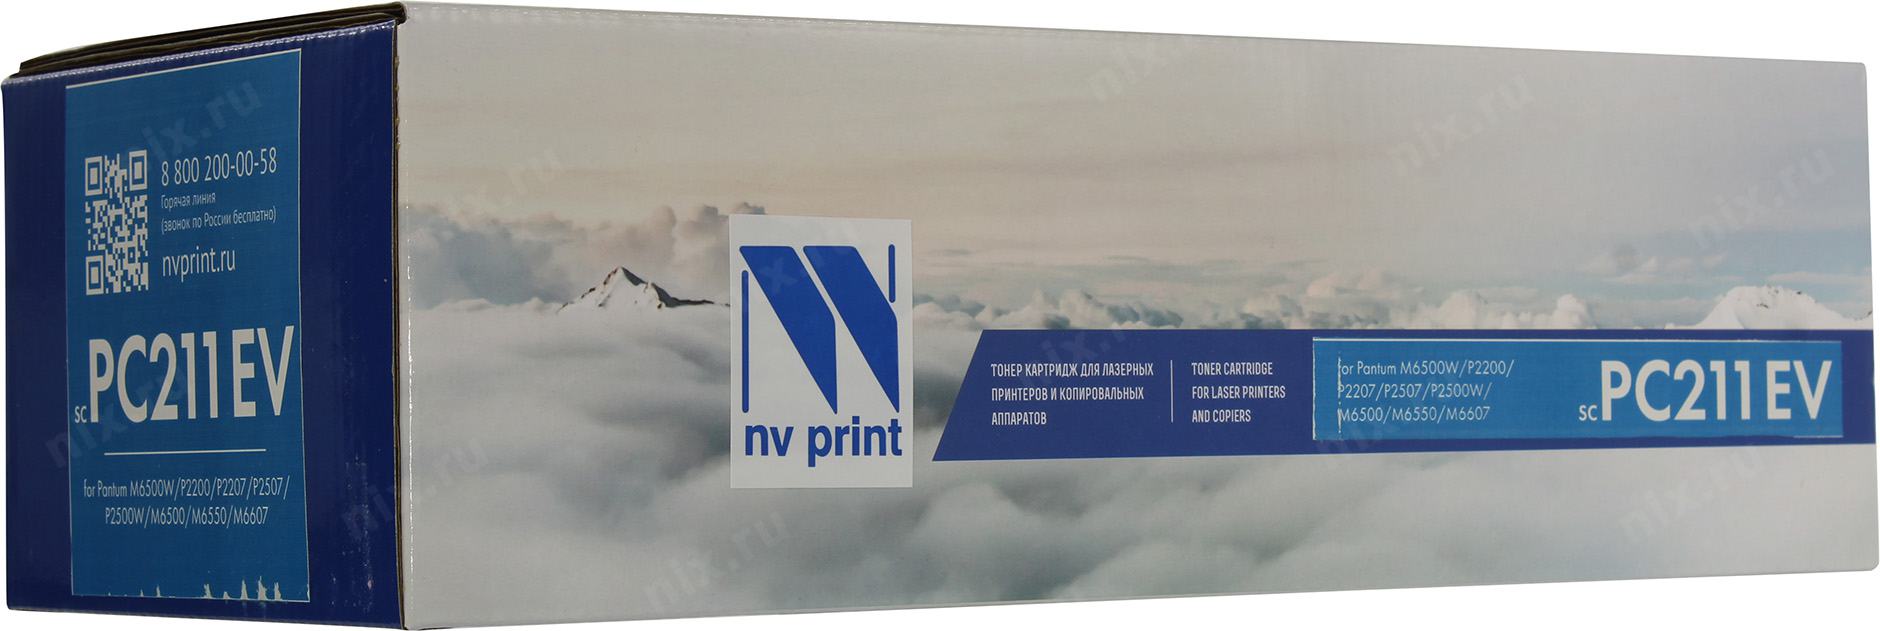   NV-Print  Pantum P2200/2500/M6500/6550/6600, PC211EV